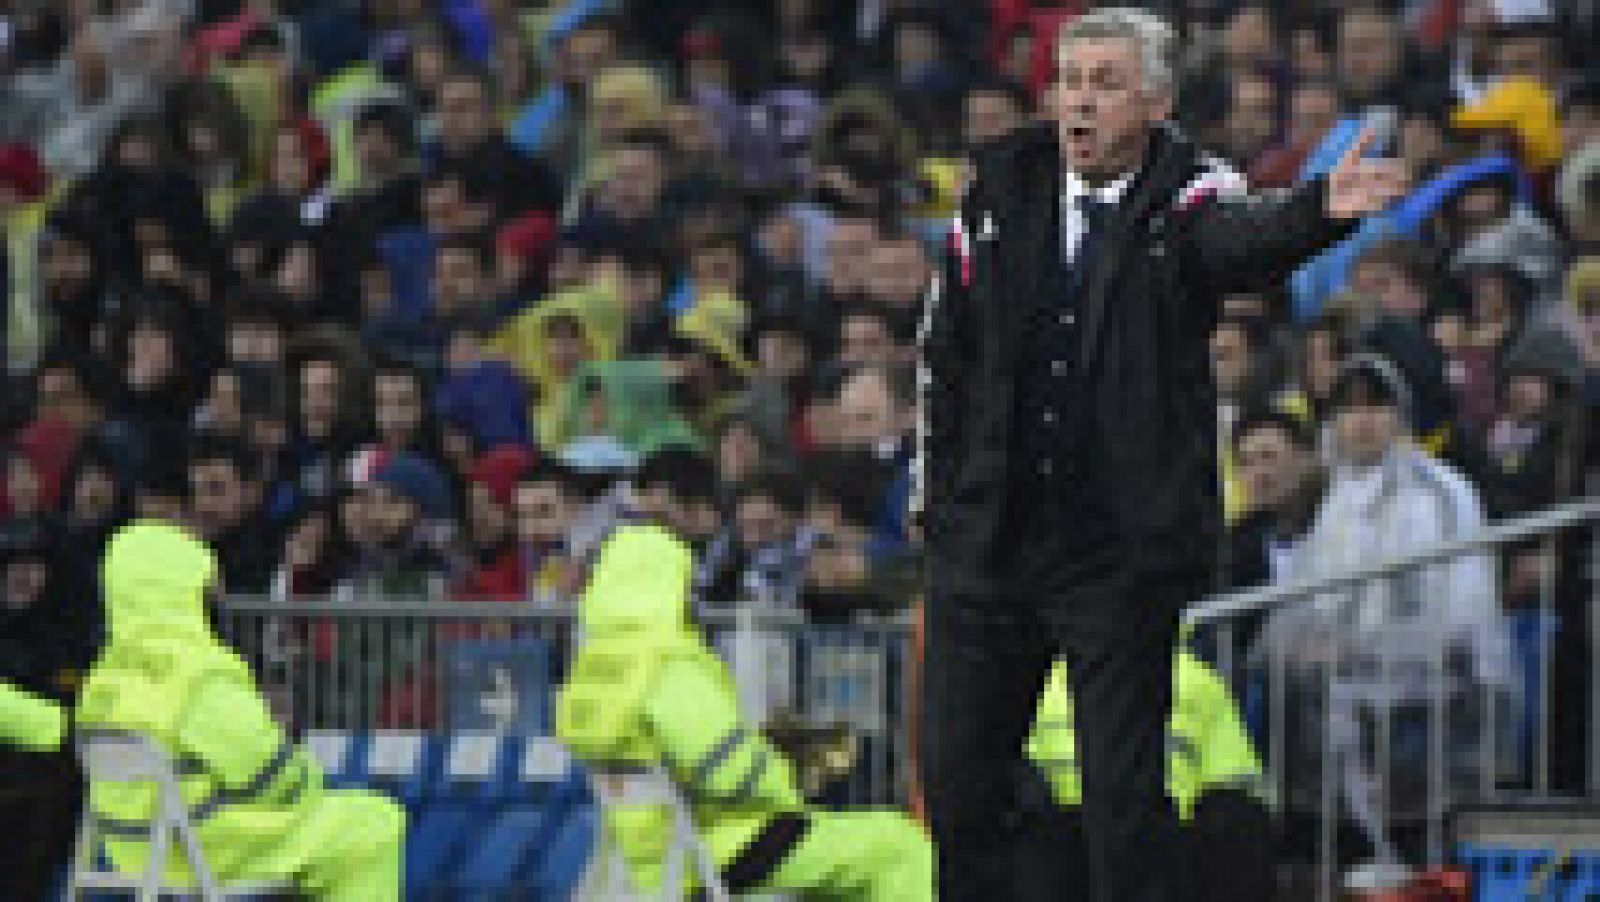 El entrenador del Real Madrid, Carlo Ancelotti, ha reconocido que cometieron "errores poco habituales" en el partido contra el Atlético de Madrid en el que han caído eliminados de la Copa del Rey.